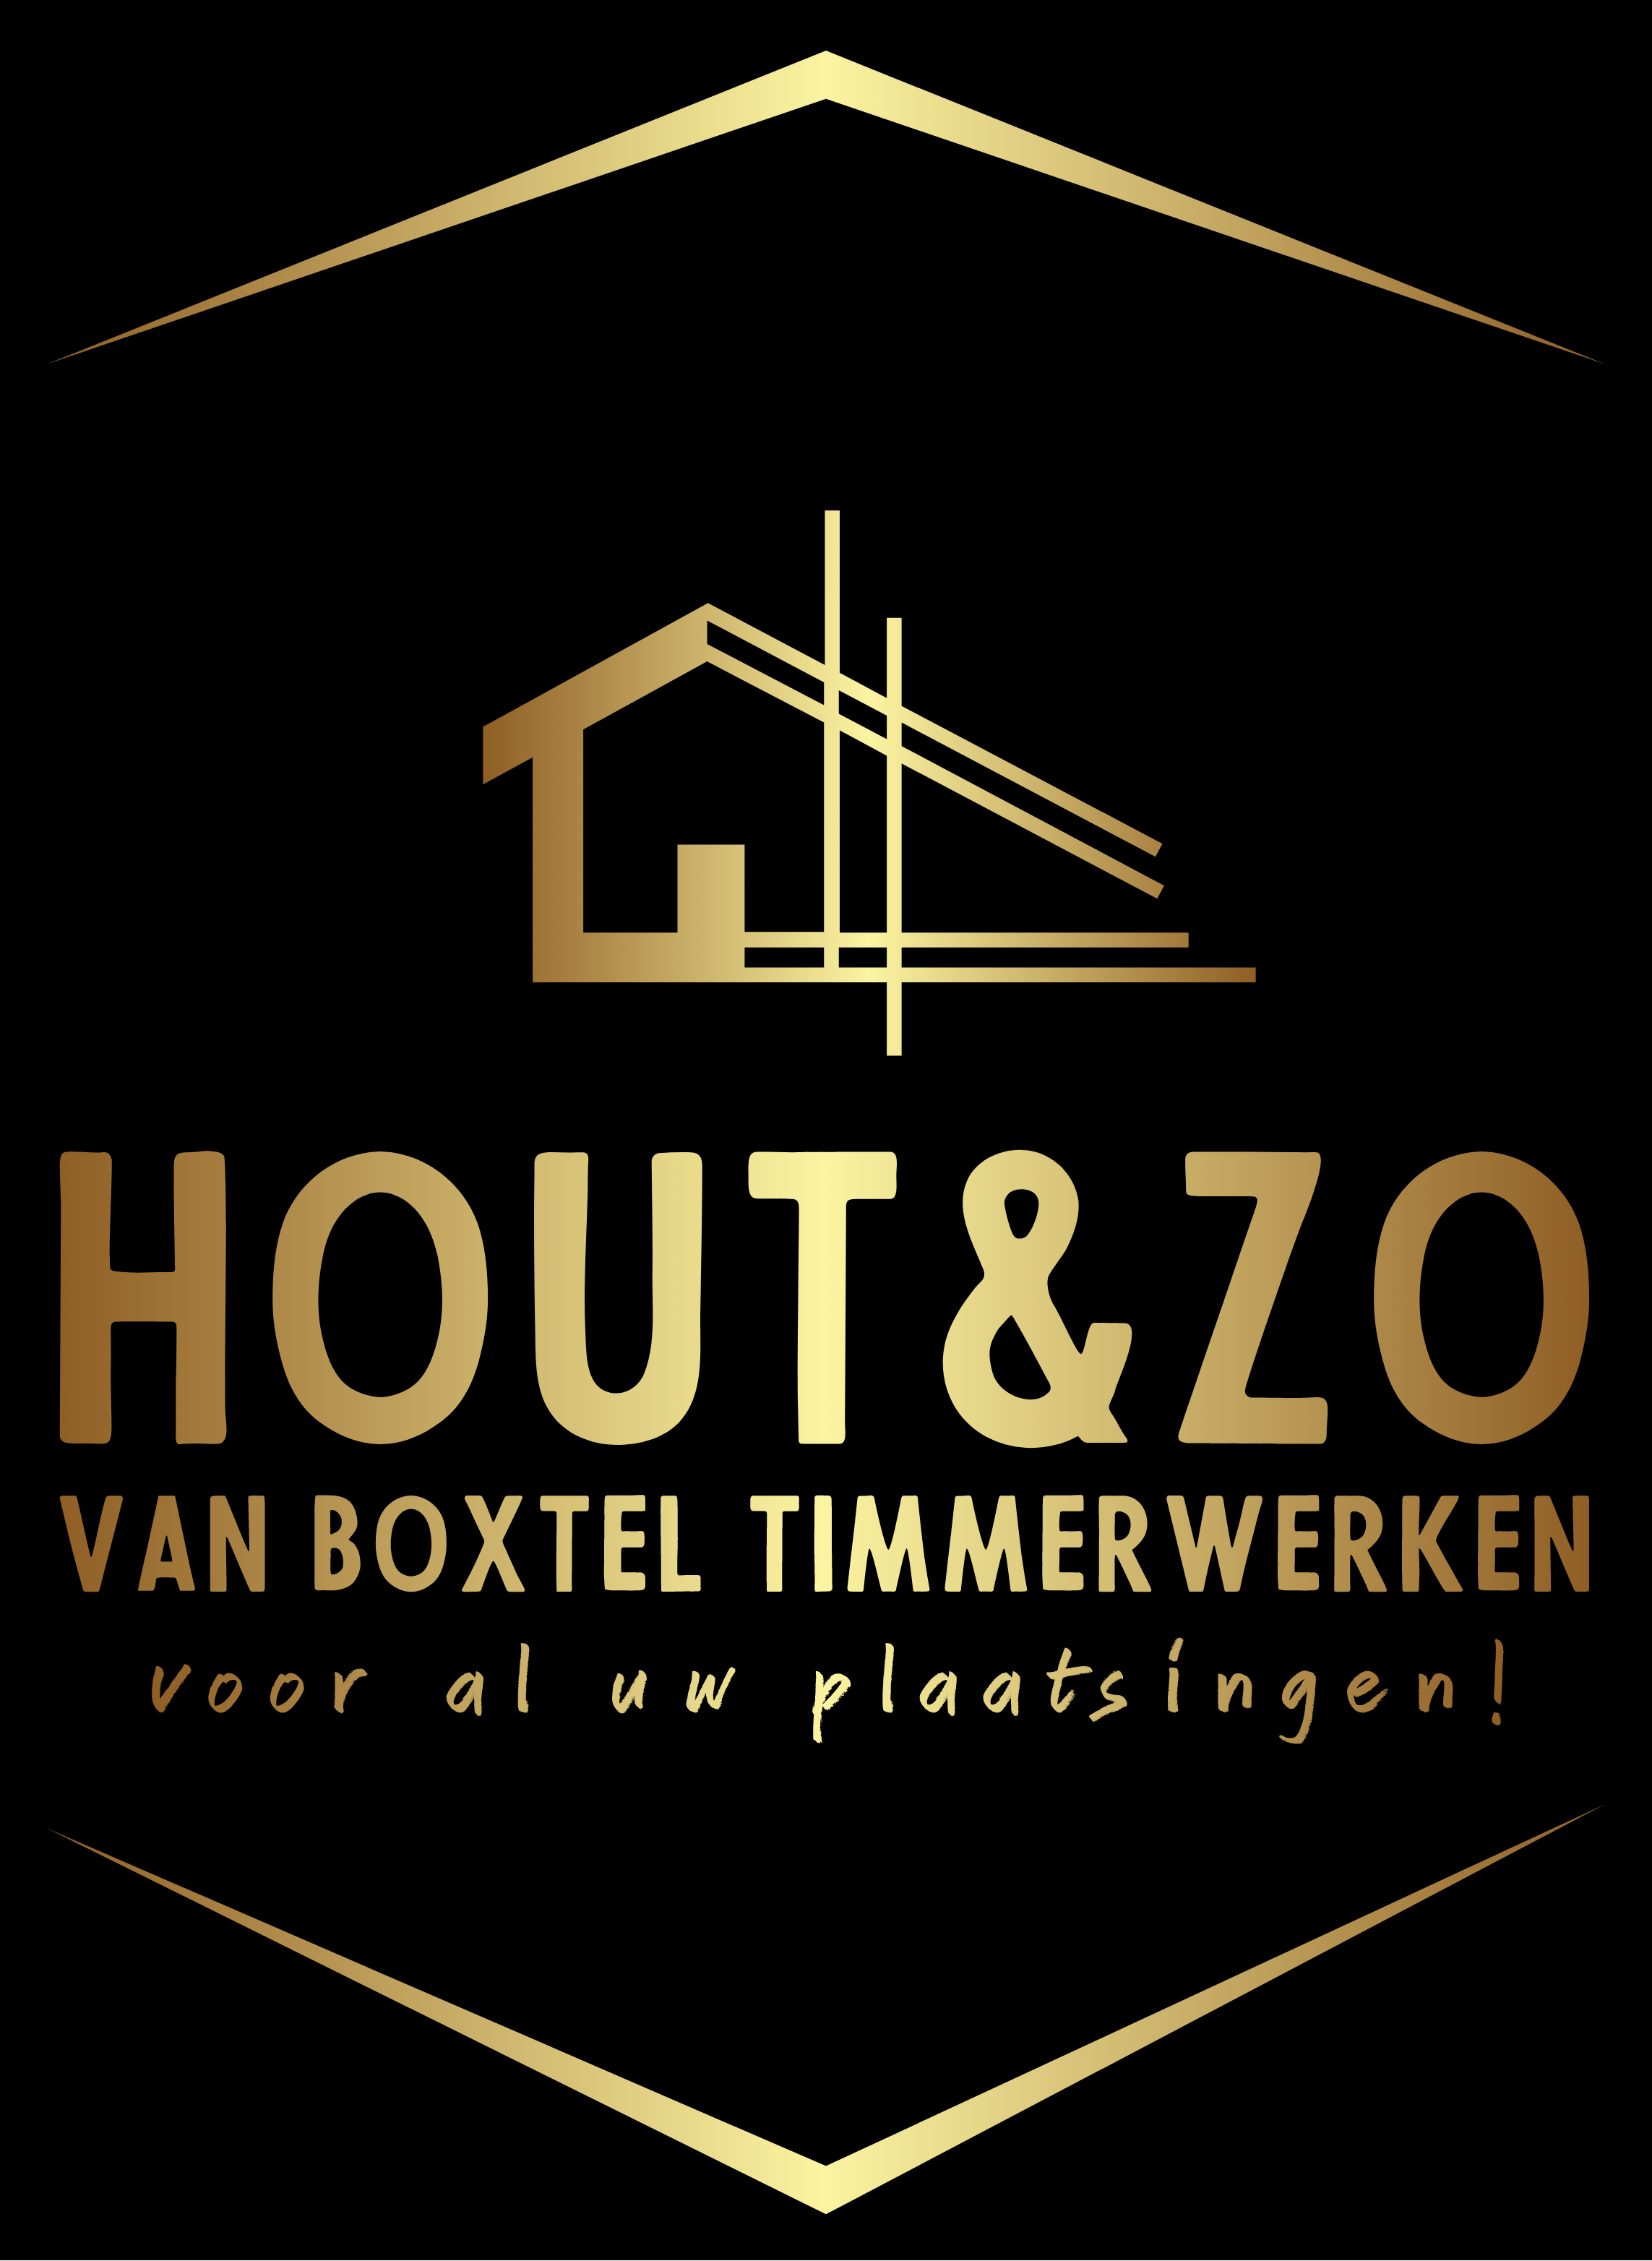 Hout&zo van Boxtel Timmerwerken logo